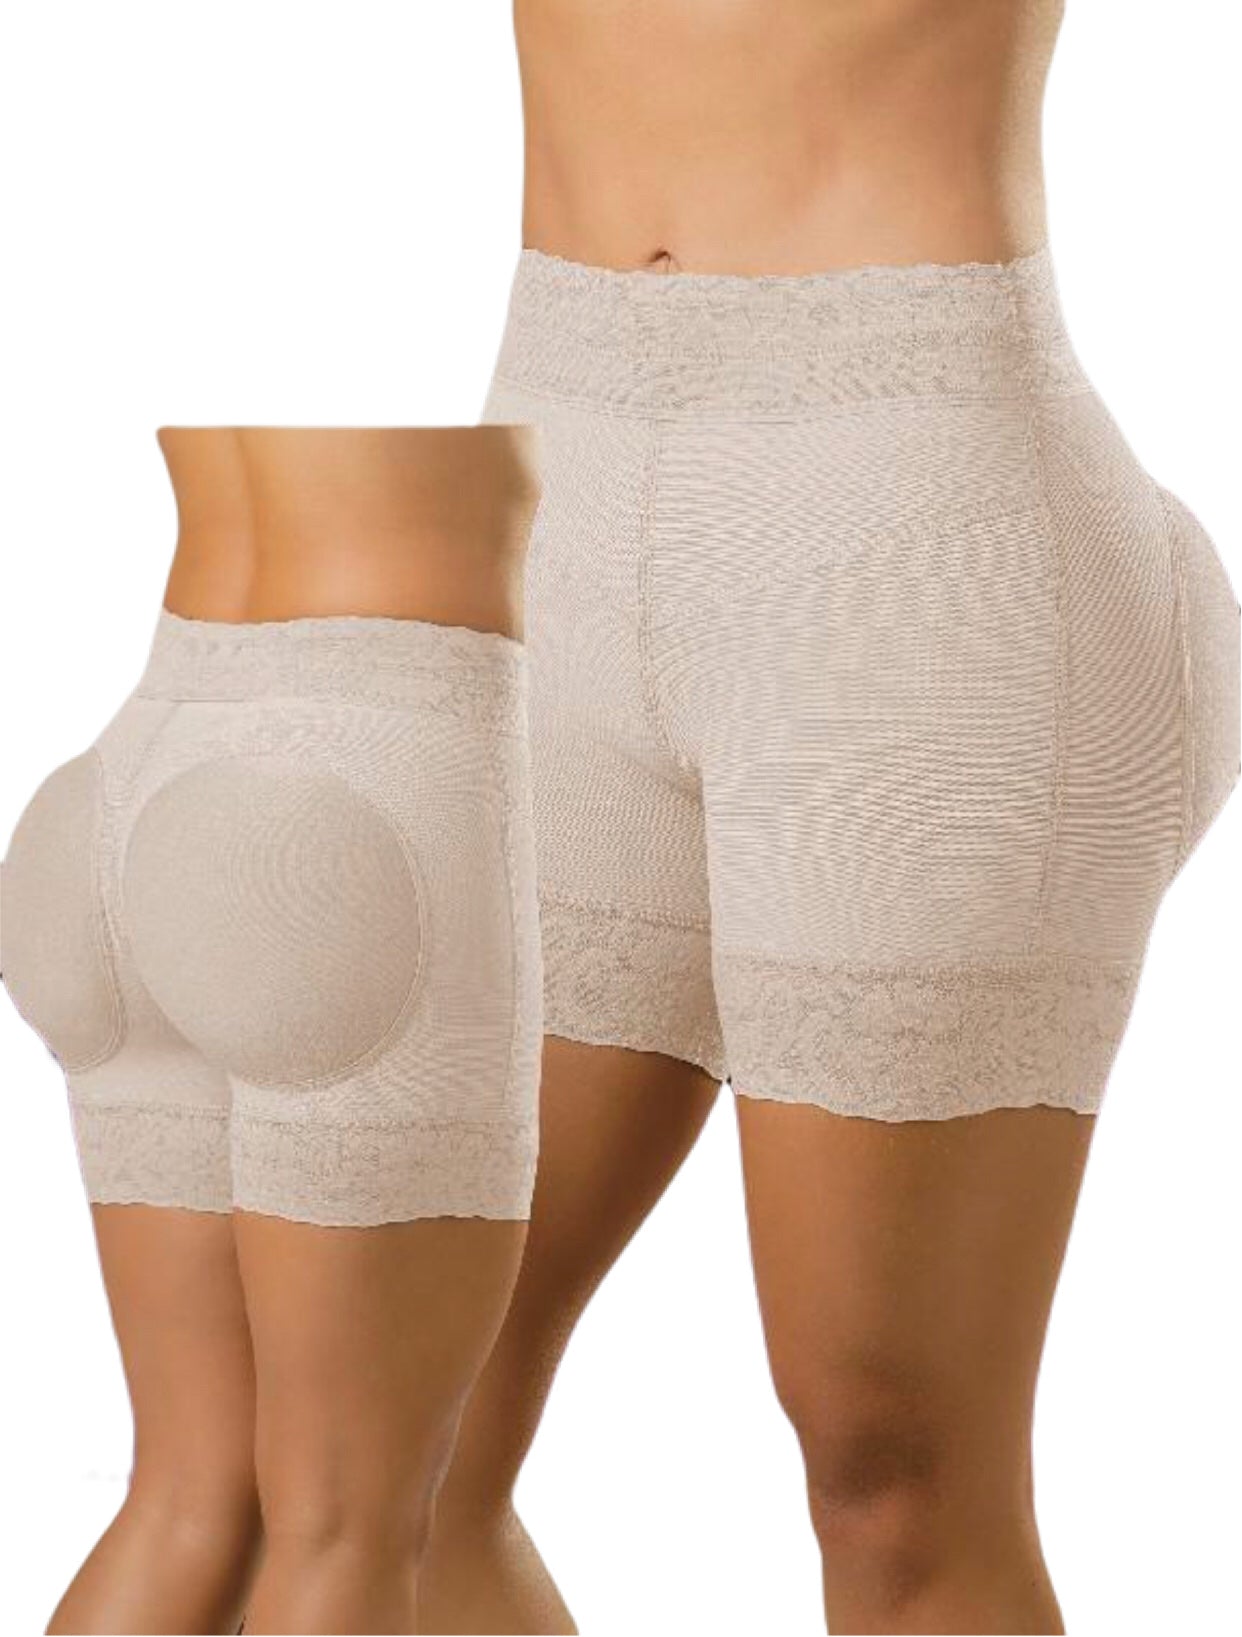 Faja Colombiana 12727  Inimar, lencería y corsetería online femenina